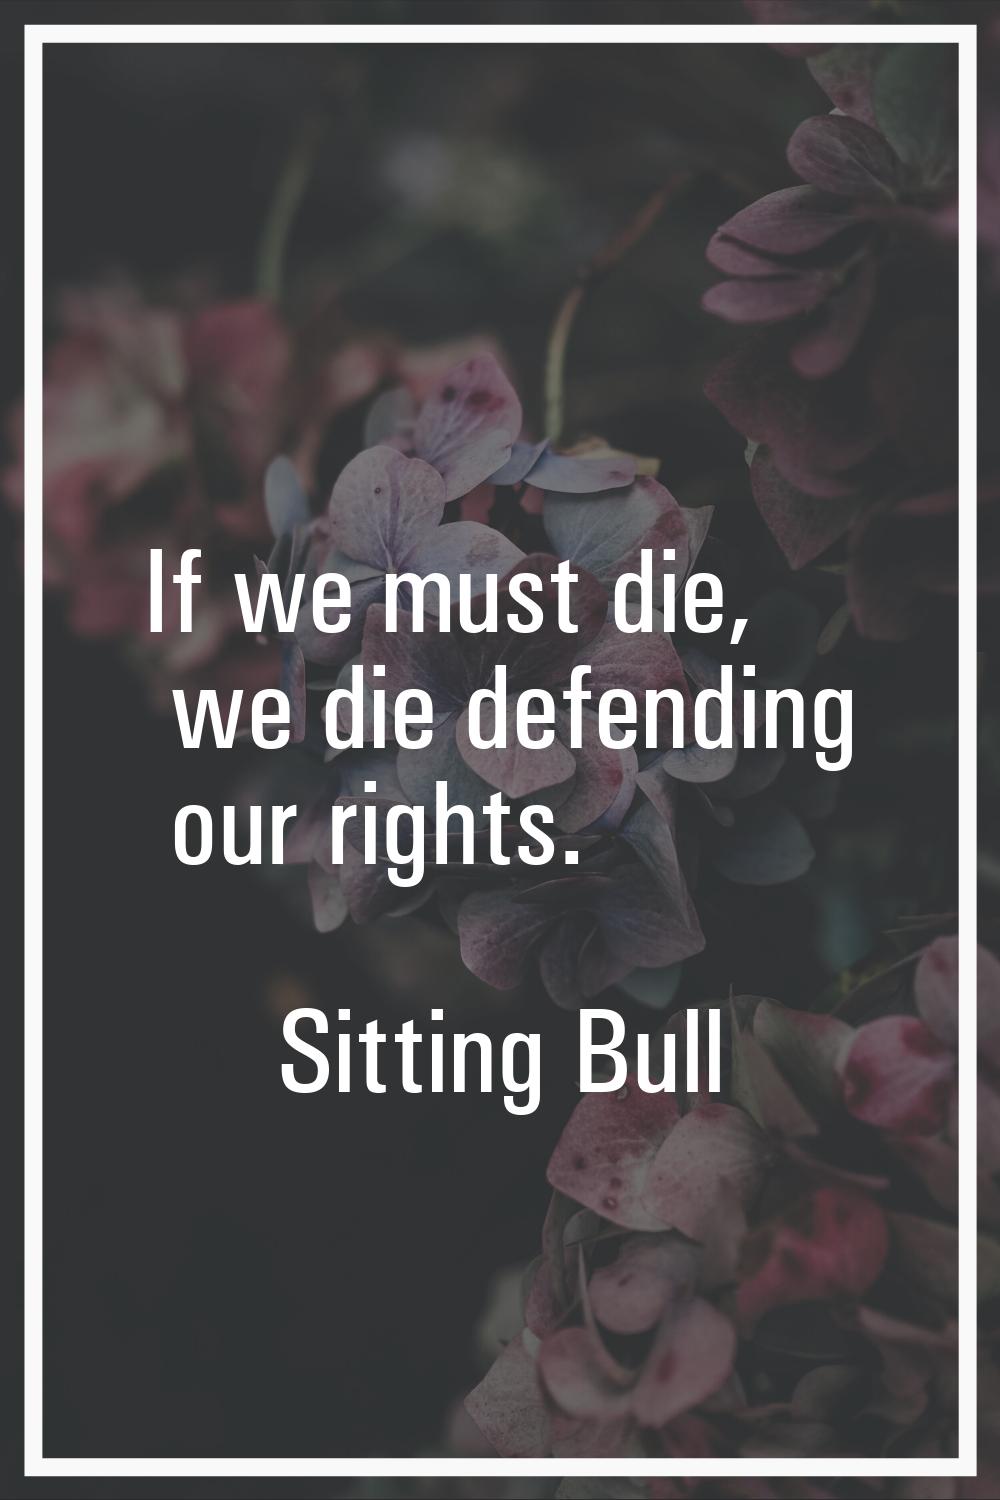 If we must die, we die defending our rights.